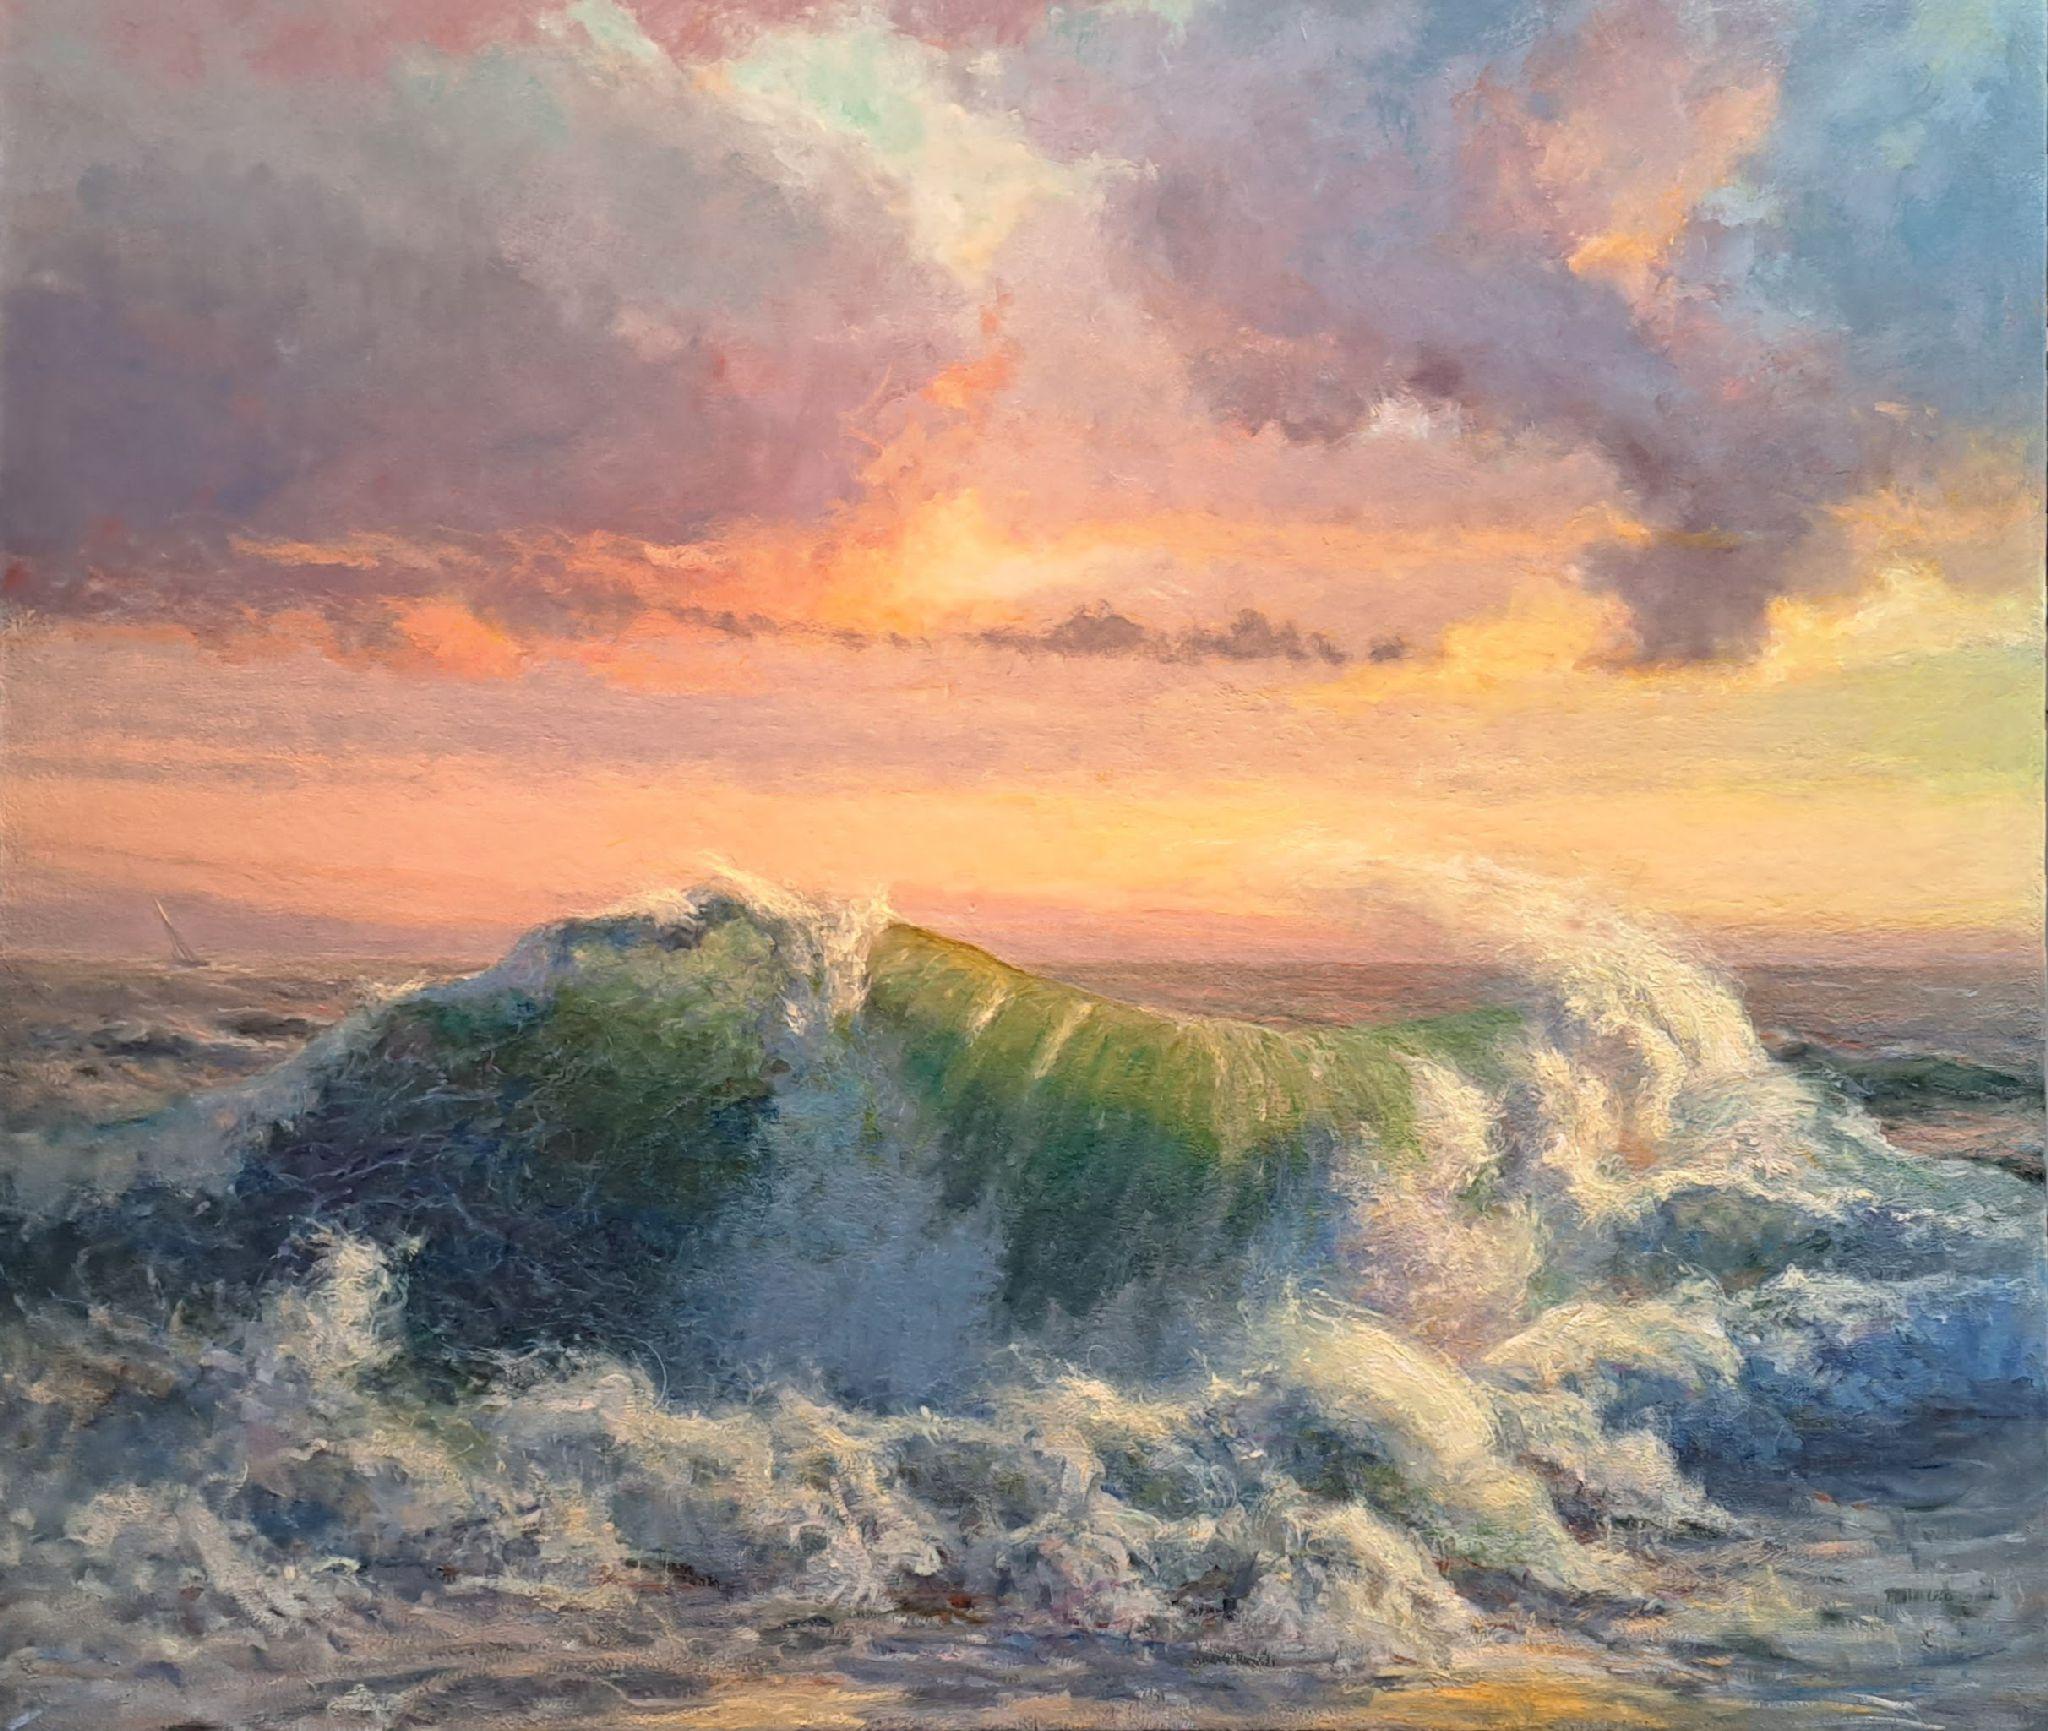 Landscape Painting Louis Guarnaccia - Symphony of the Seas, côte sud de Nantucket